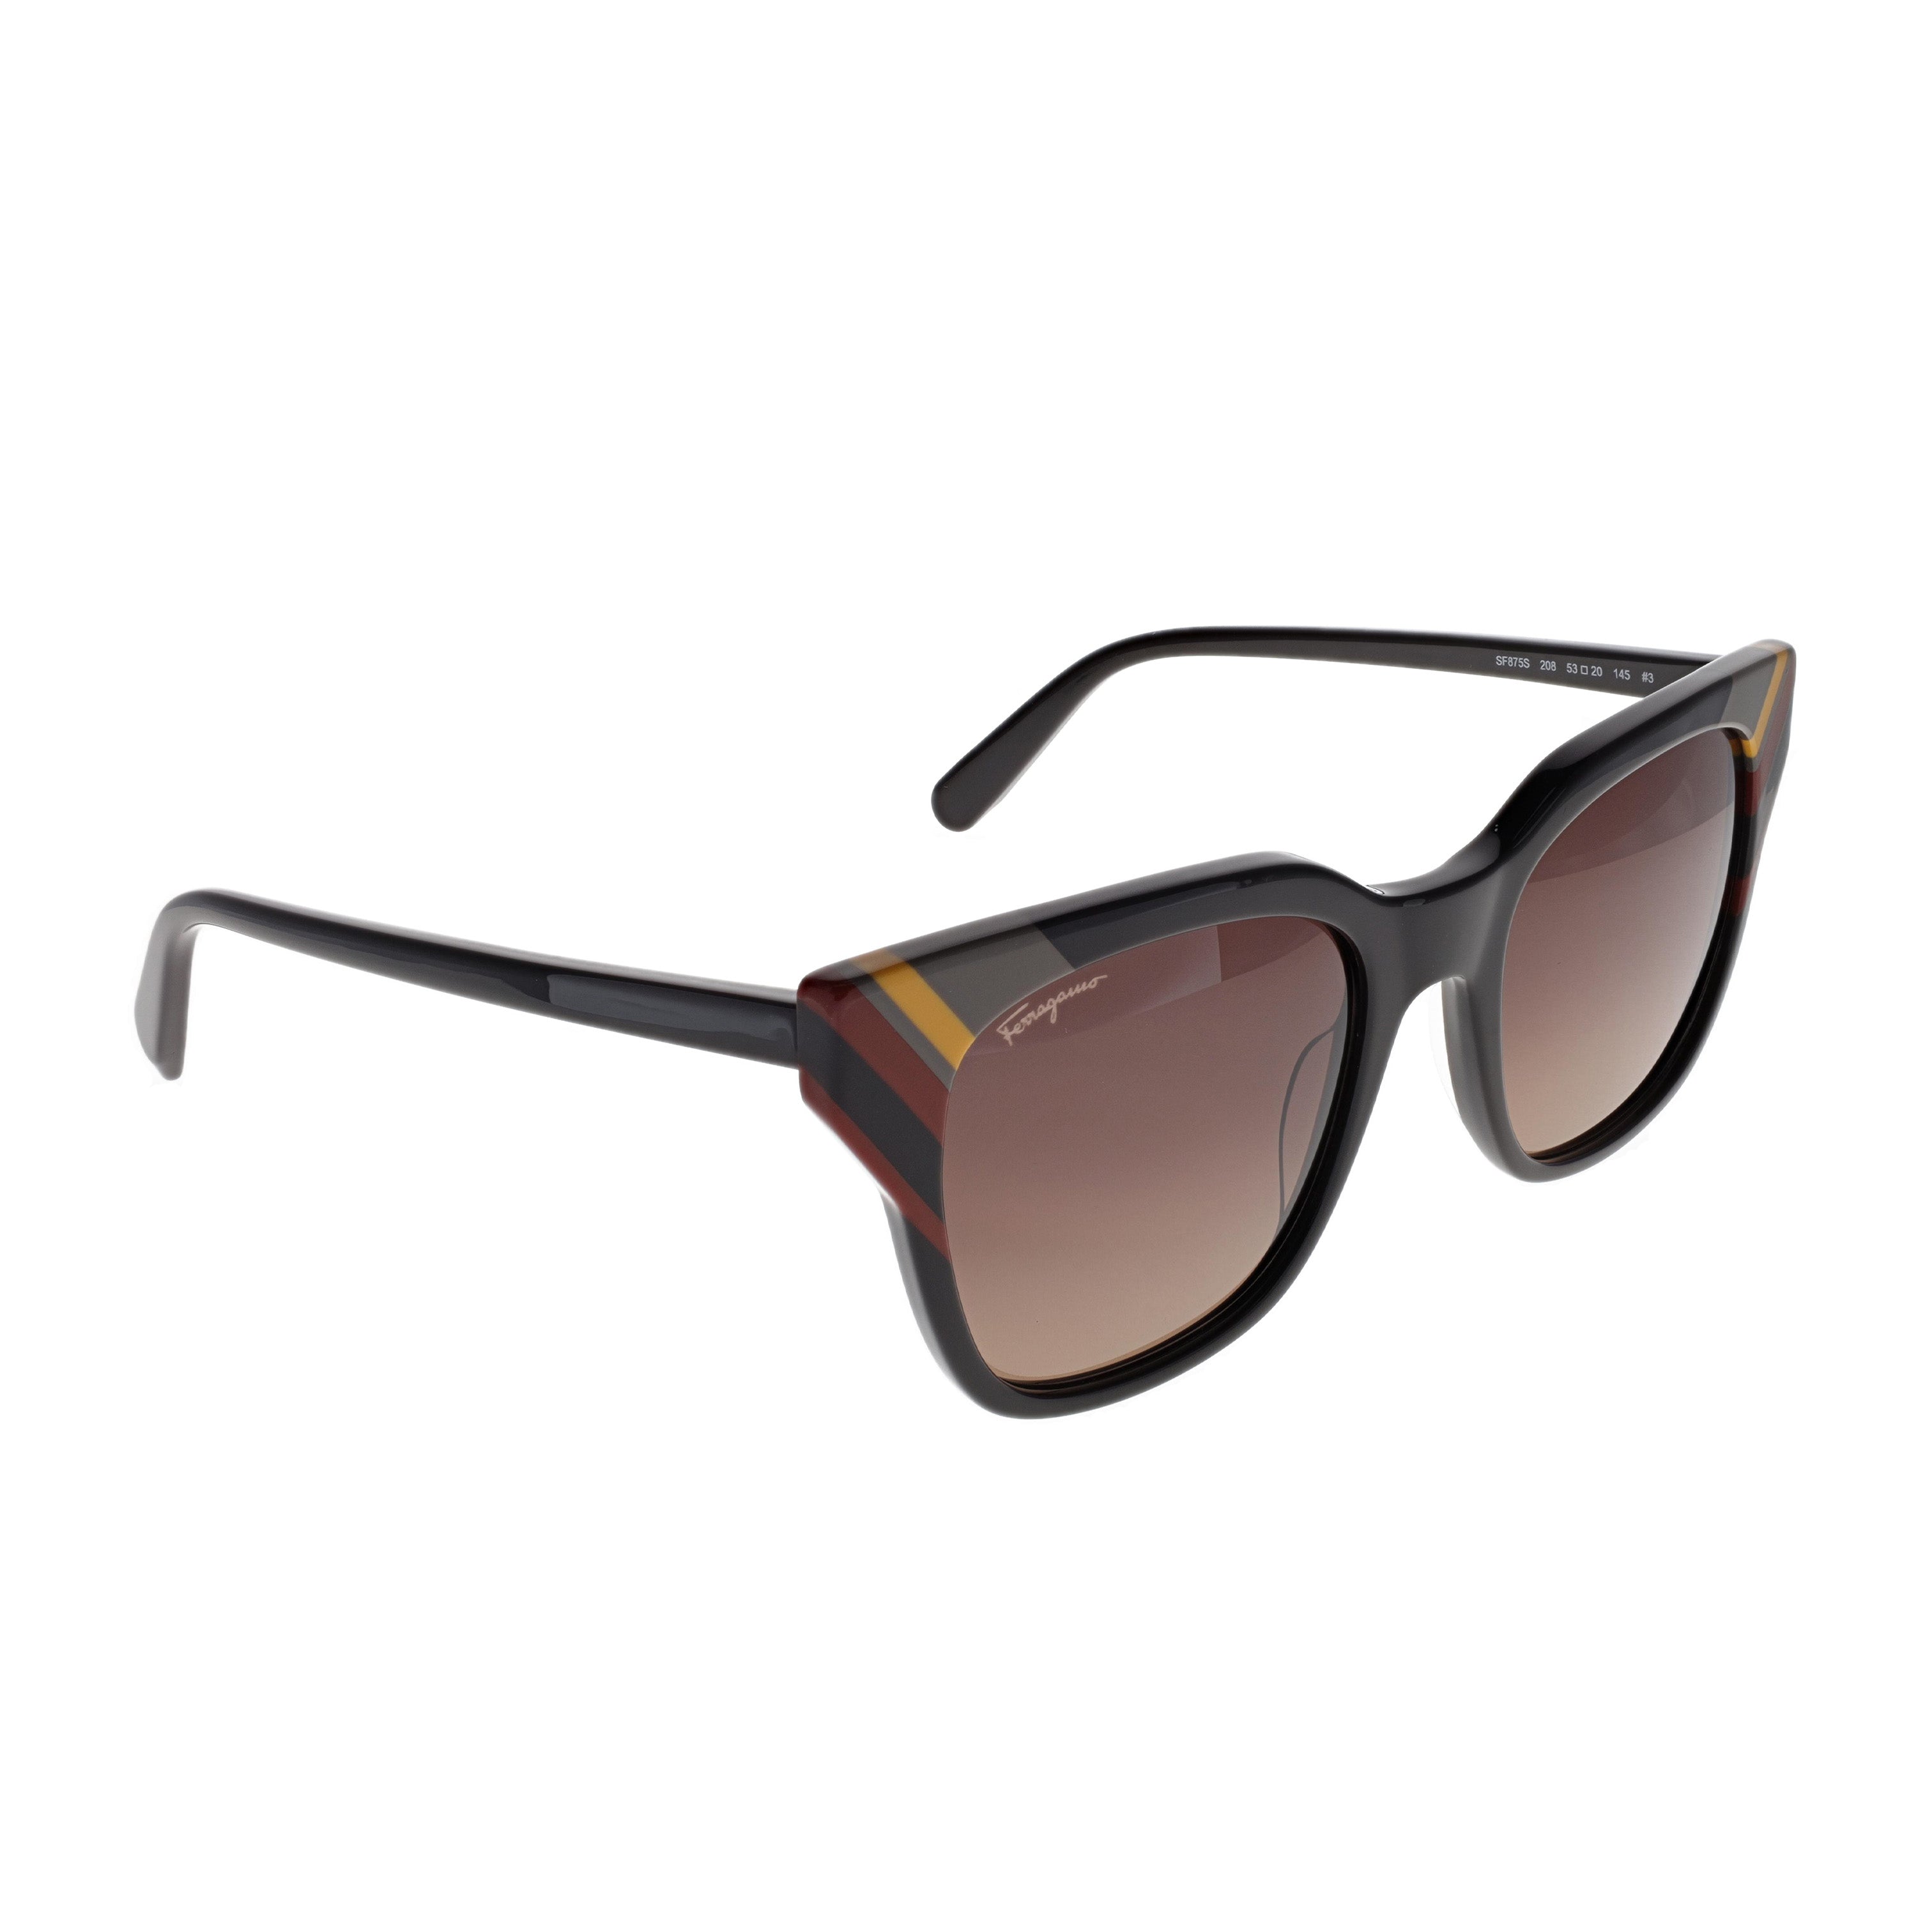 Salvatore Ferragamo Sunglasses - SF875S - Dark Brown